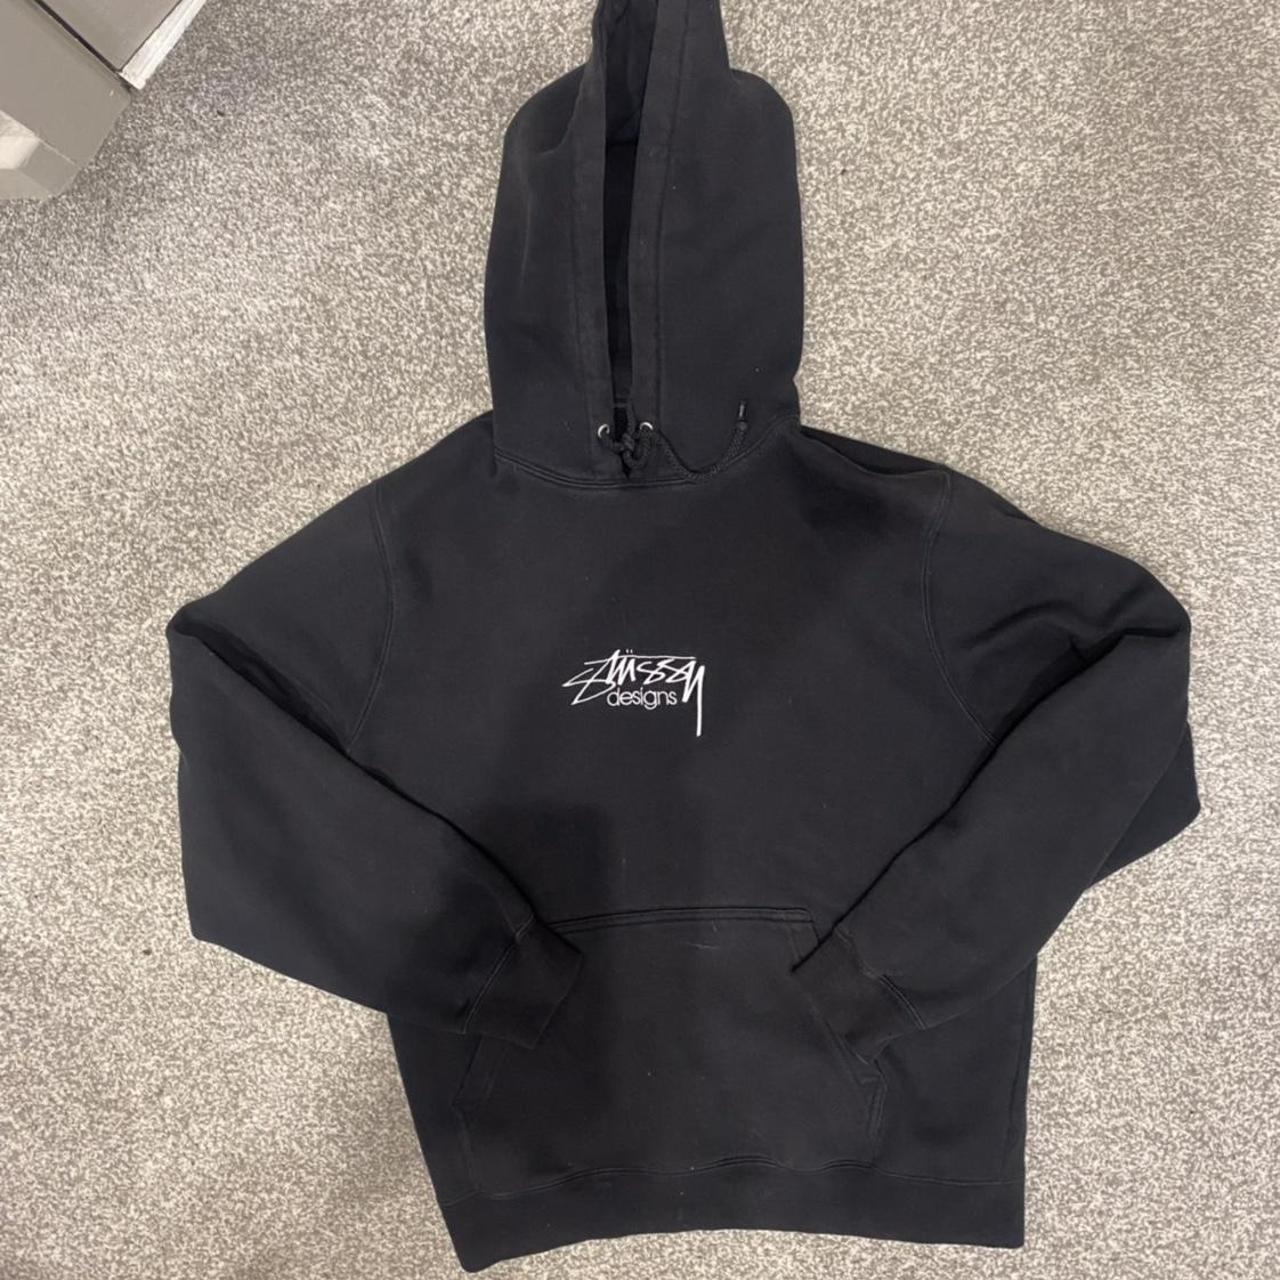 Vintage stussy designs hoodie in black Size medium... - Depop